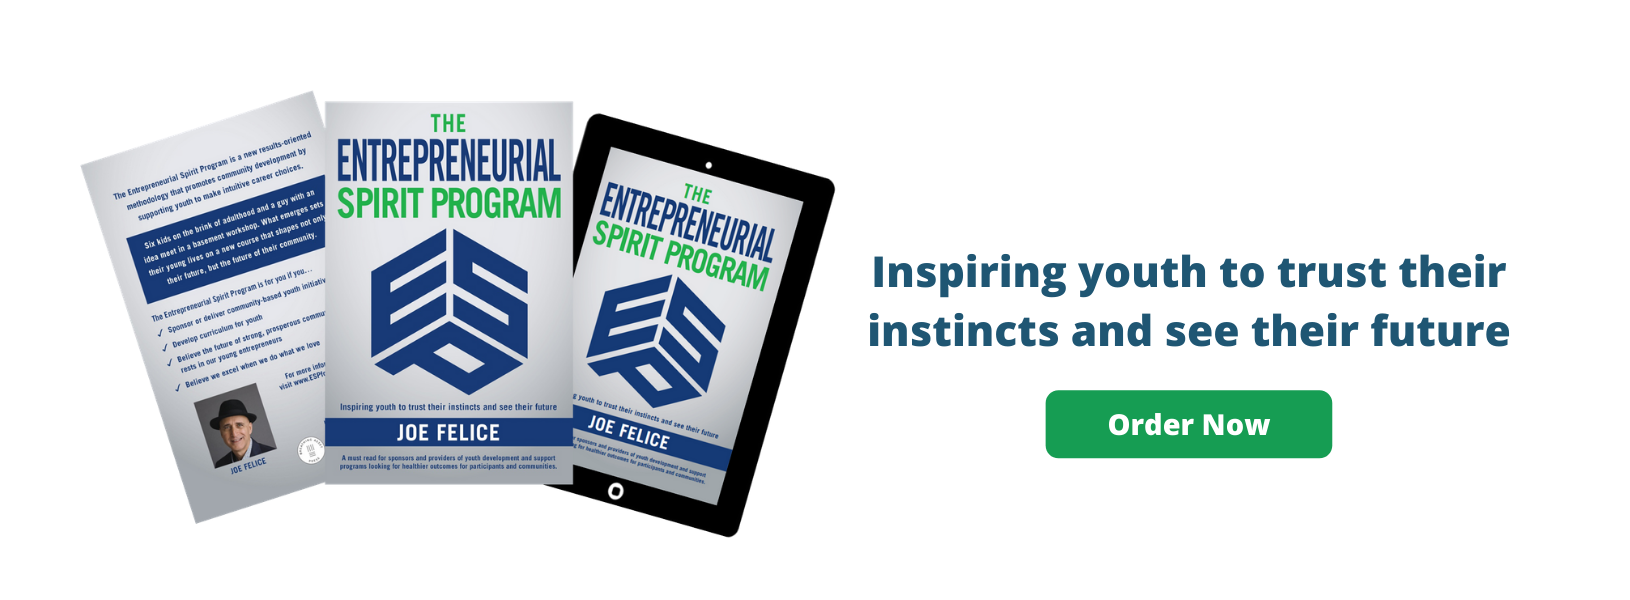 Entrepreneurial Spirit Program Book - Order Now